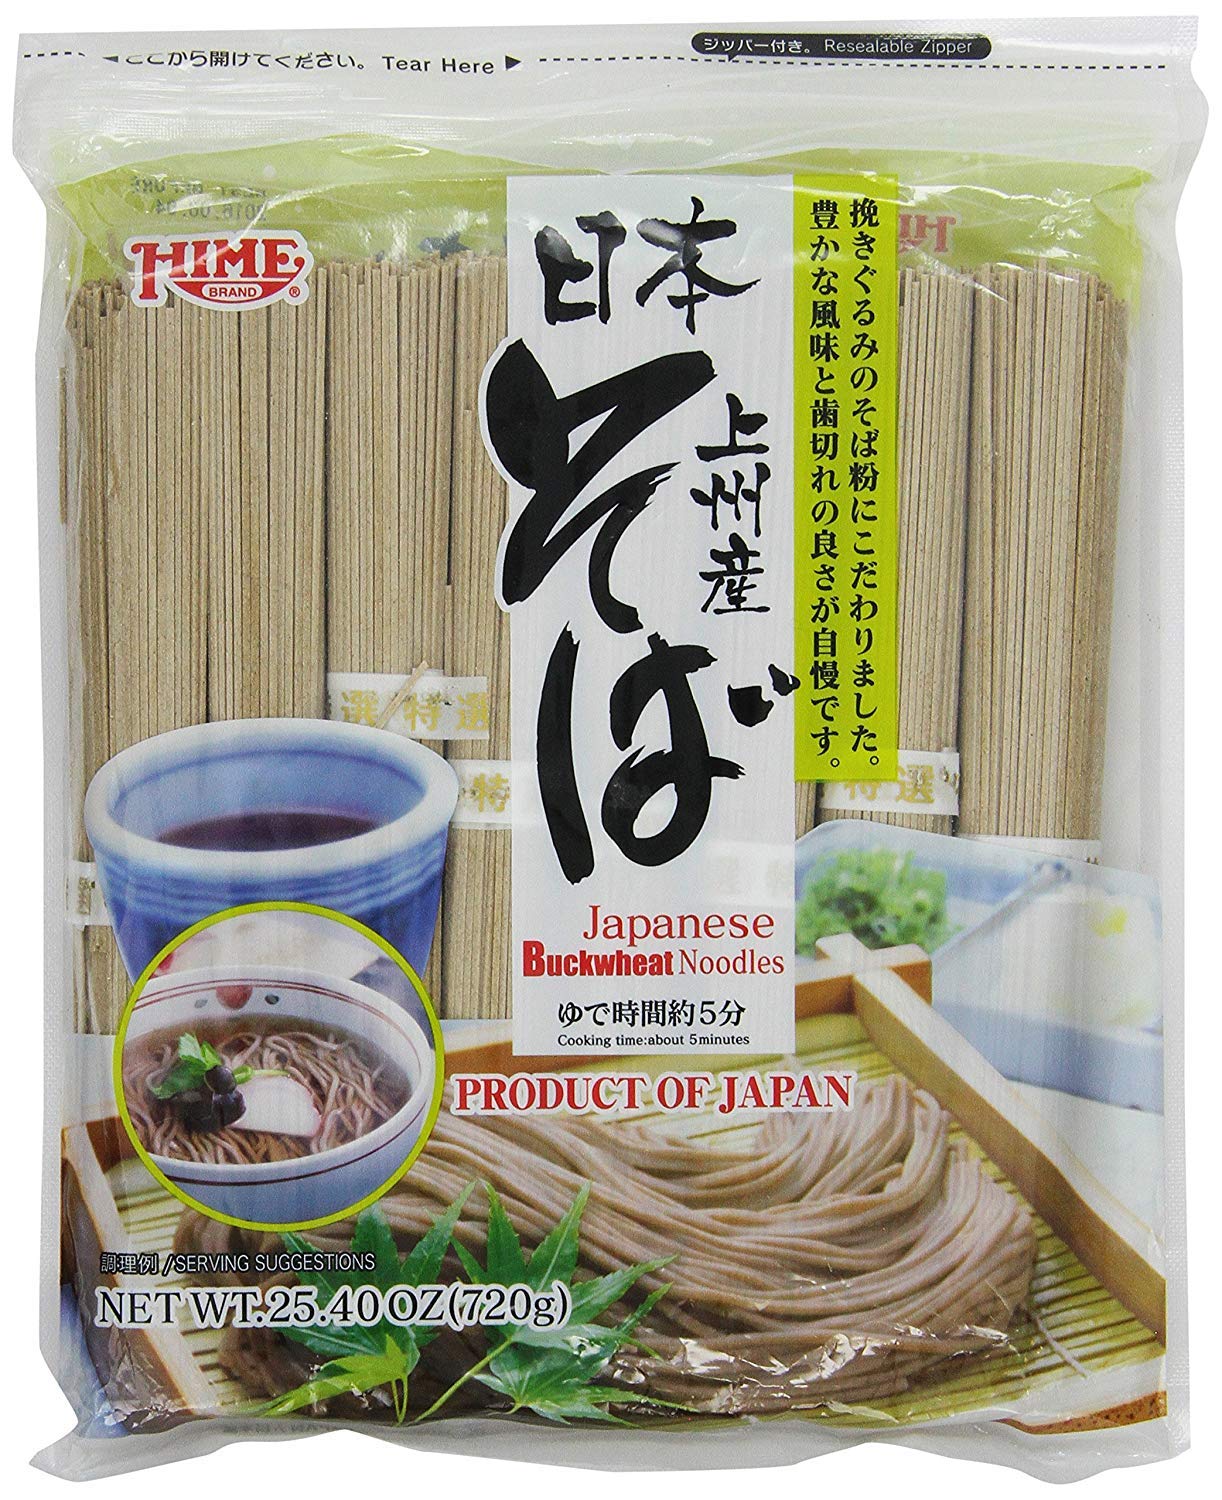 Buckwheat noodles